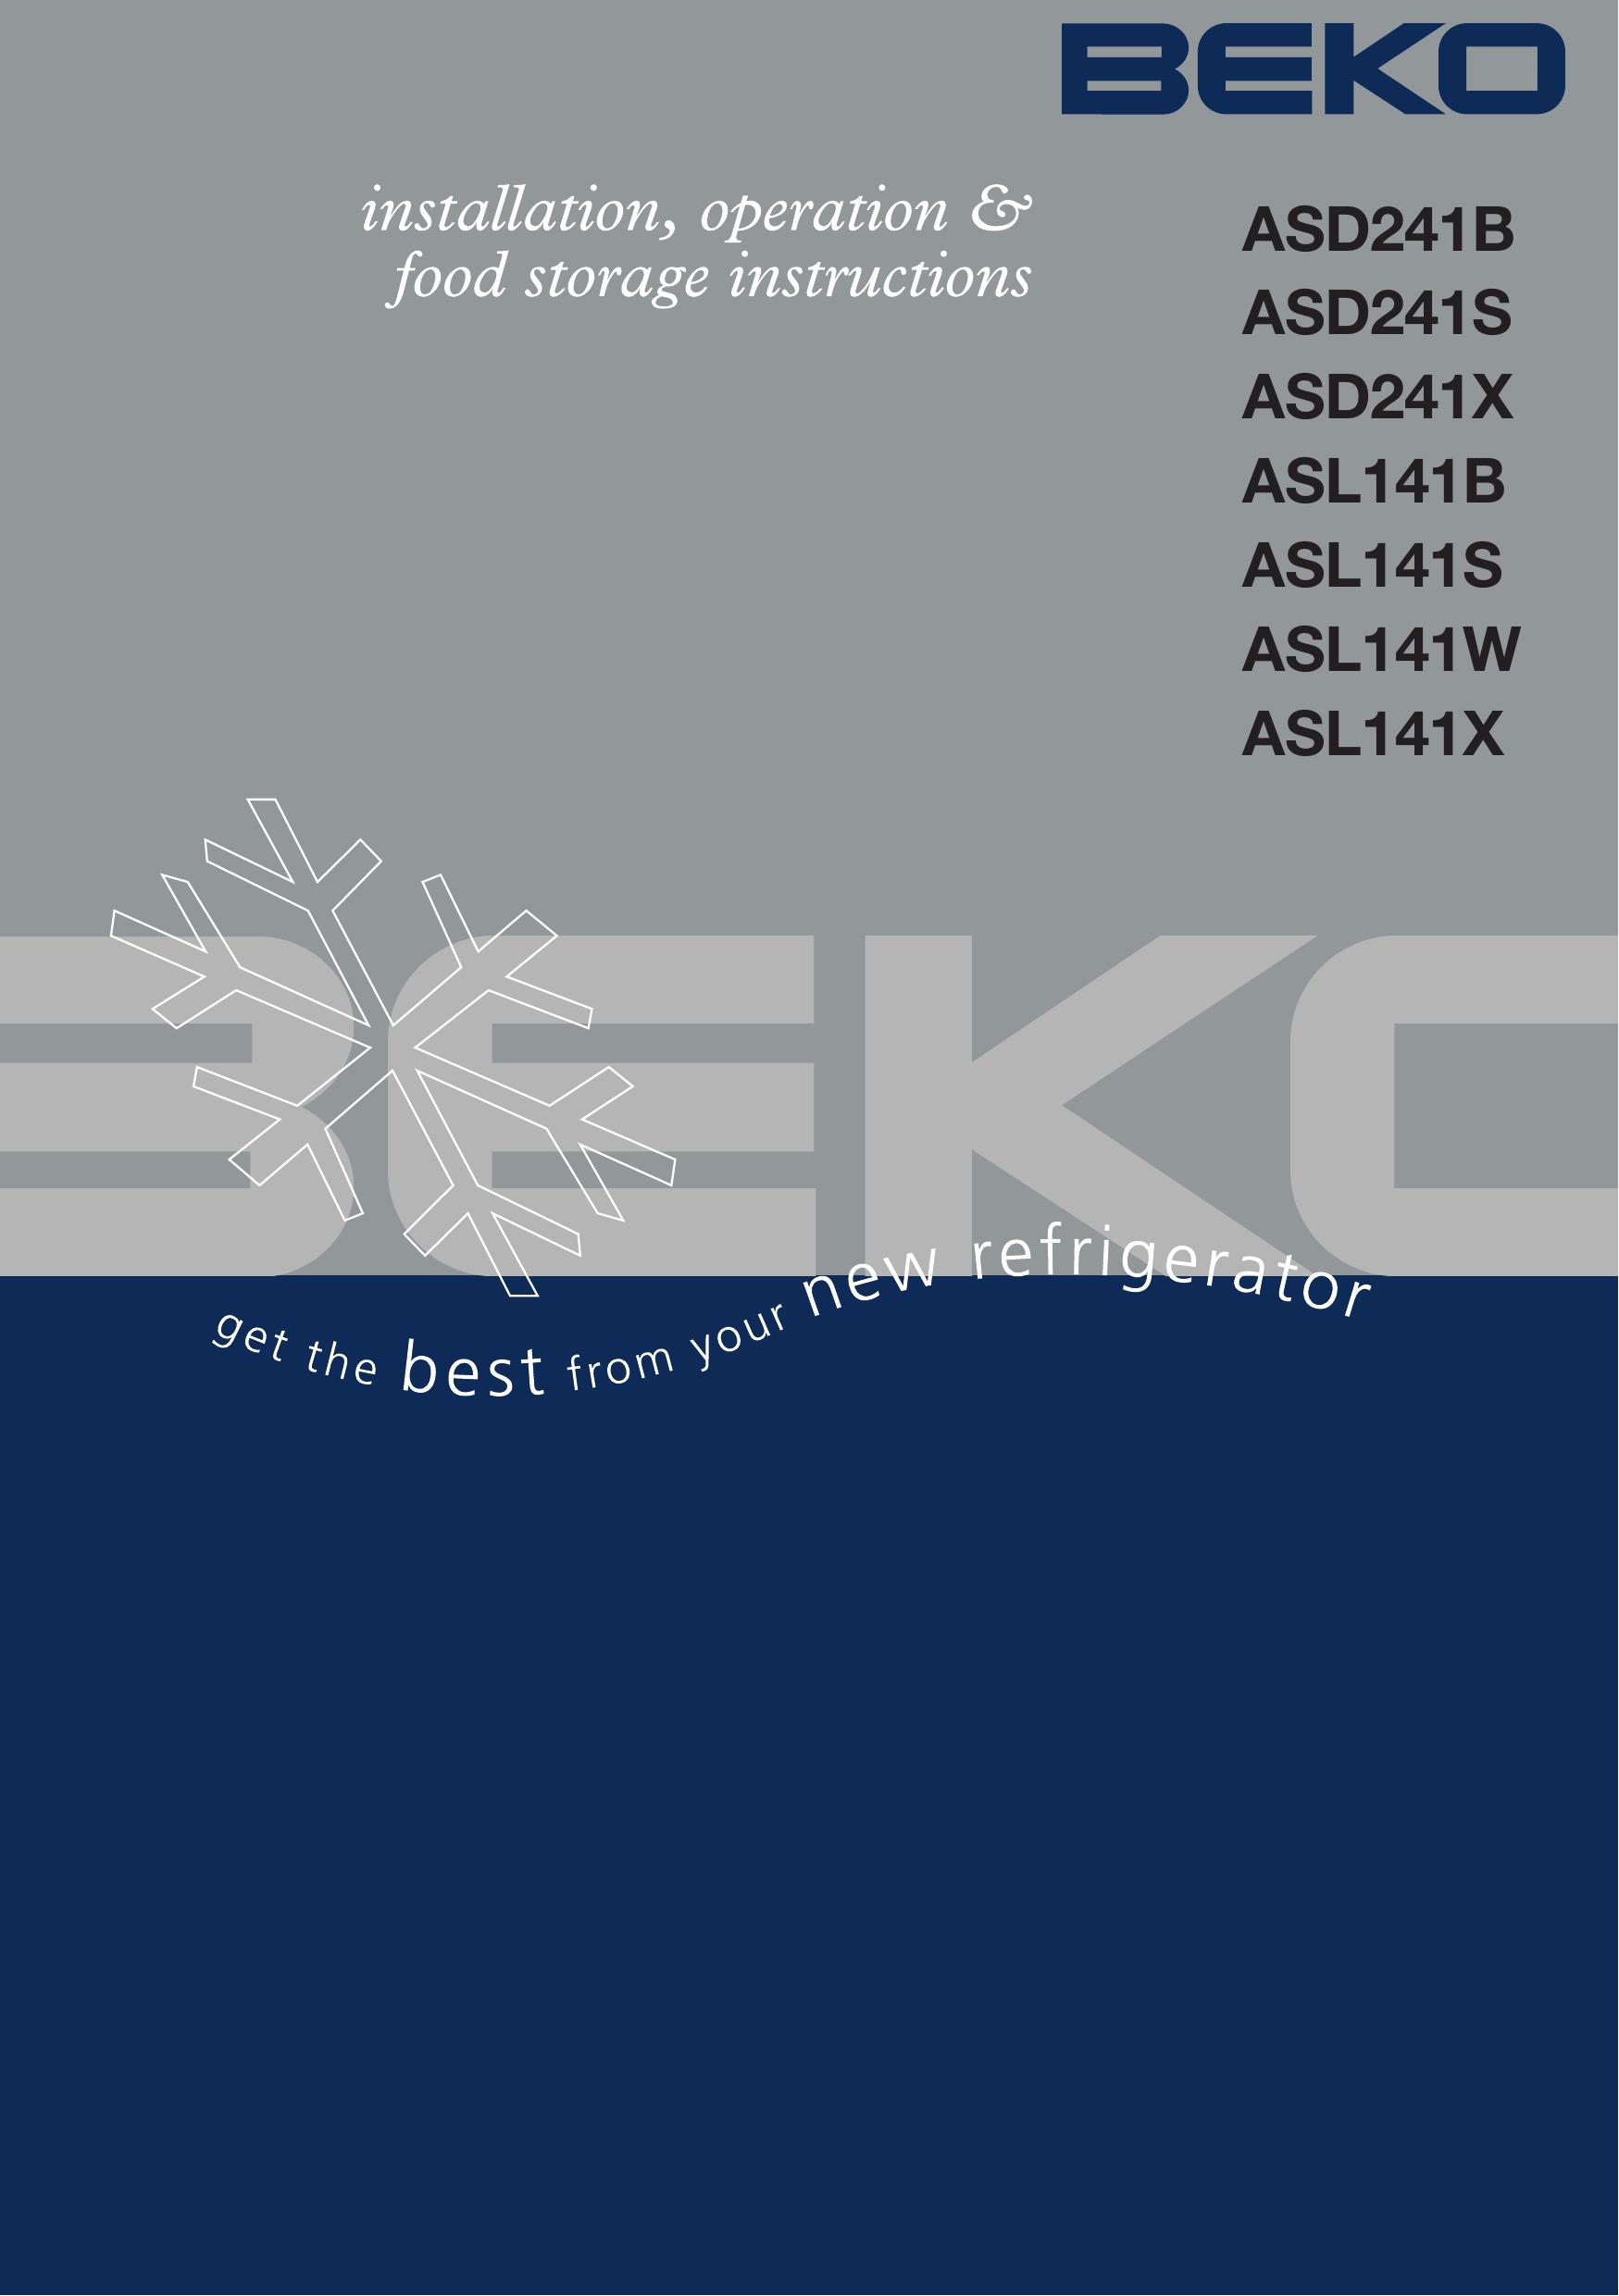 Beko ASL141B Refrigerator User Manual